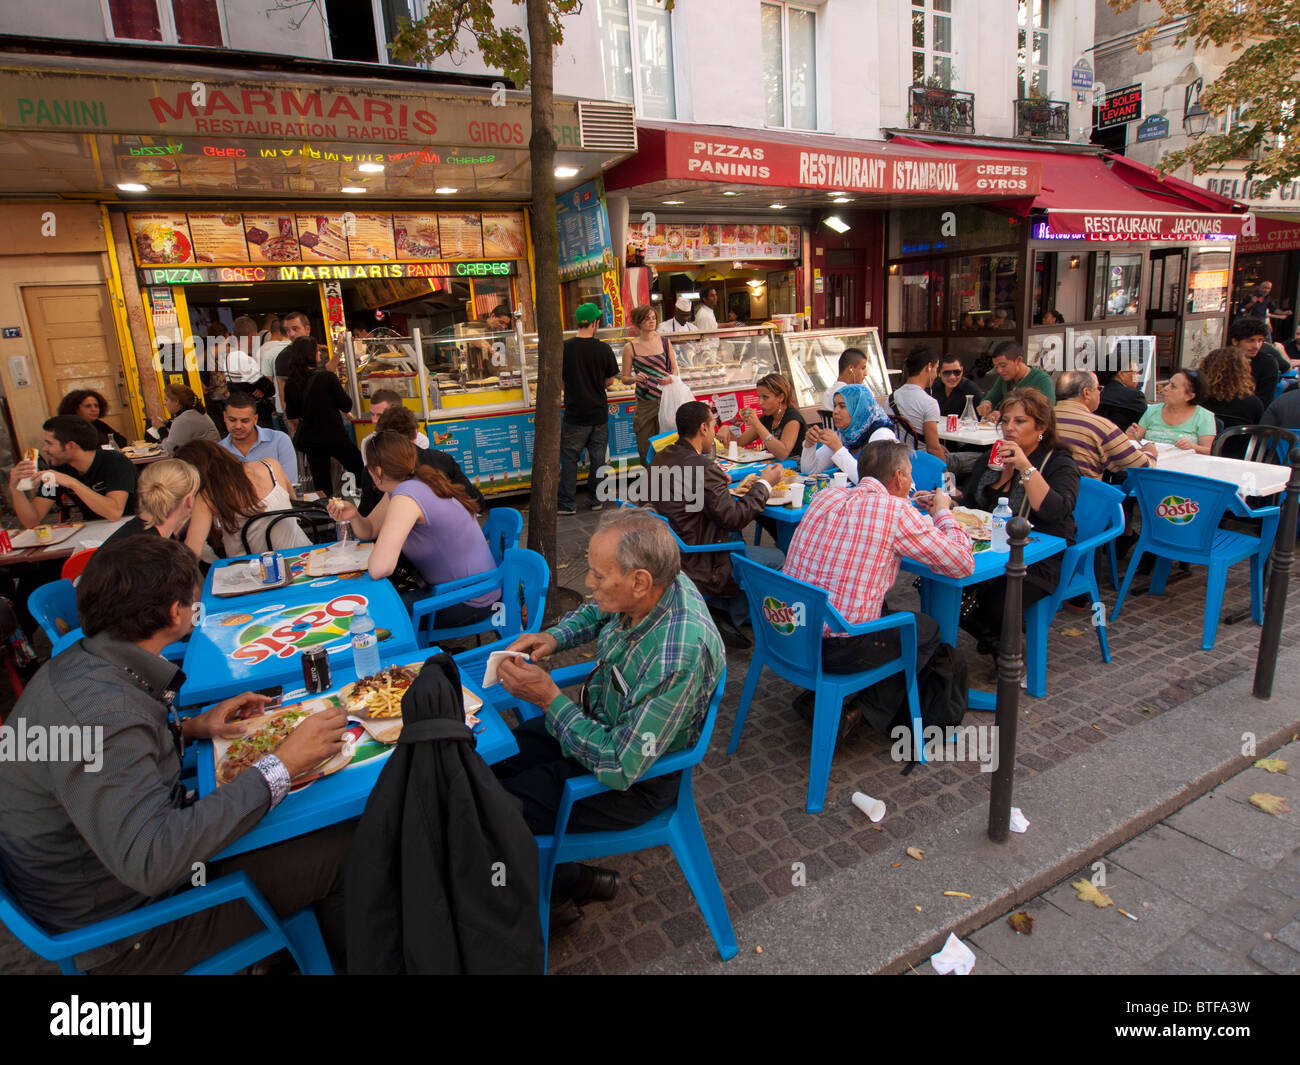 Tea and Sandwich in Paris Cafe Stock Photo - Image of paris, teapot:  21140448